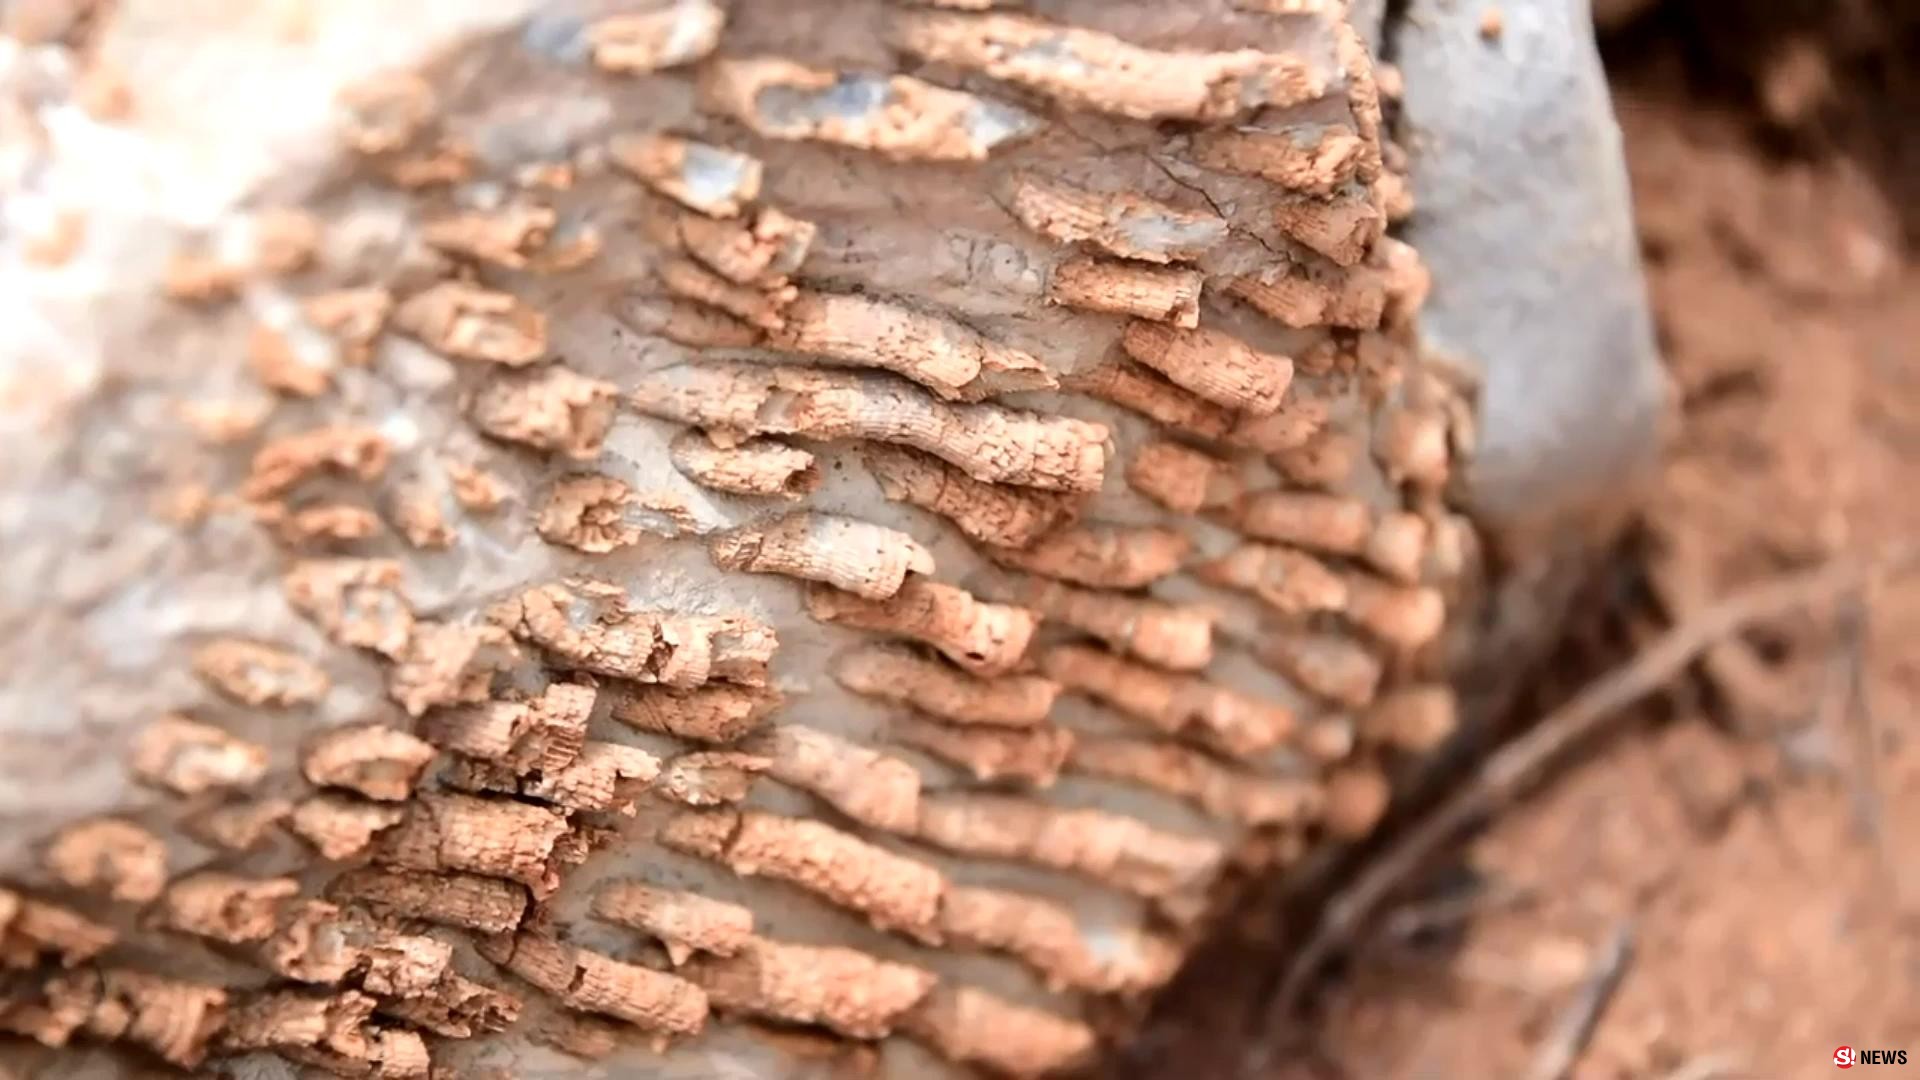 มหัศจรรย์แผ่นดินเพชรบูรณ์ พบซากฟอสซิลพืช-สัตว์ อายุร่วม 300 ปี